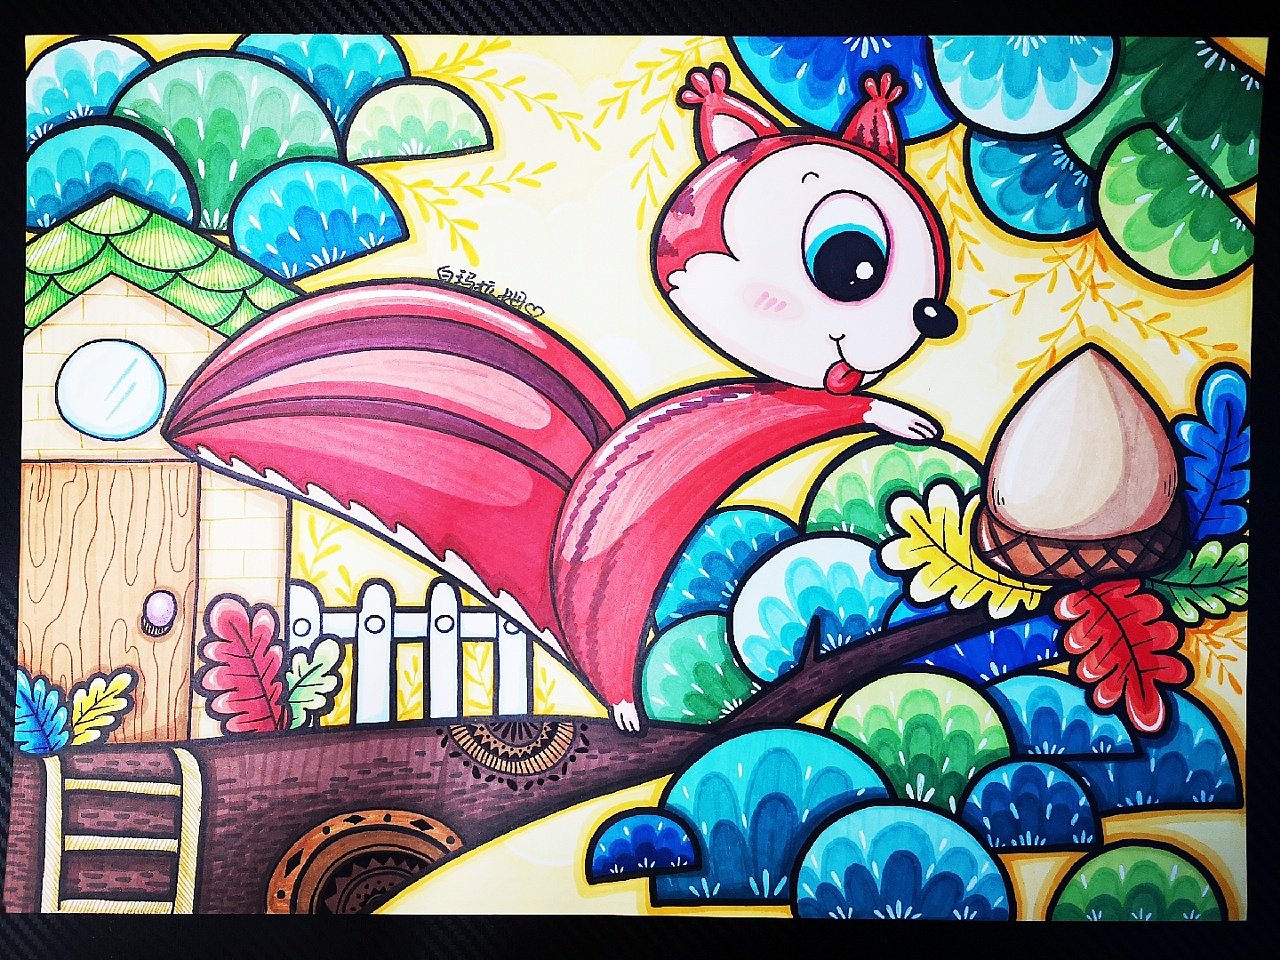 儿童画创作-美术绘画 - 常州市新北区圩塘中心小学